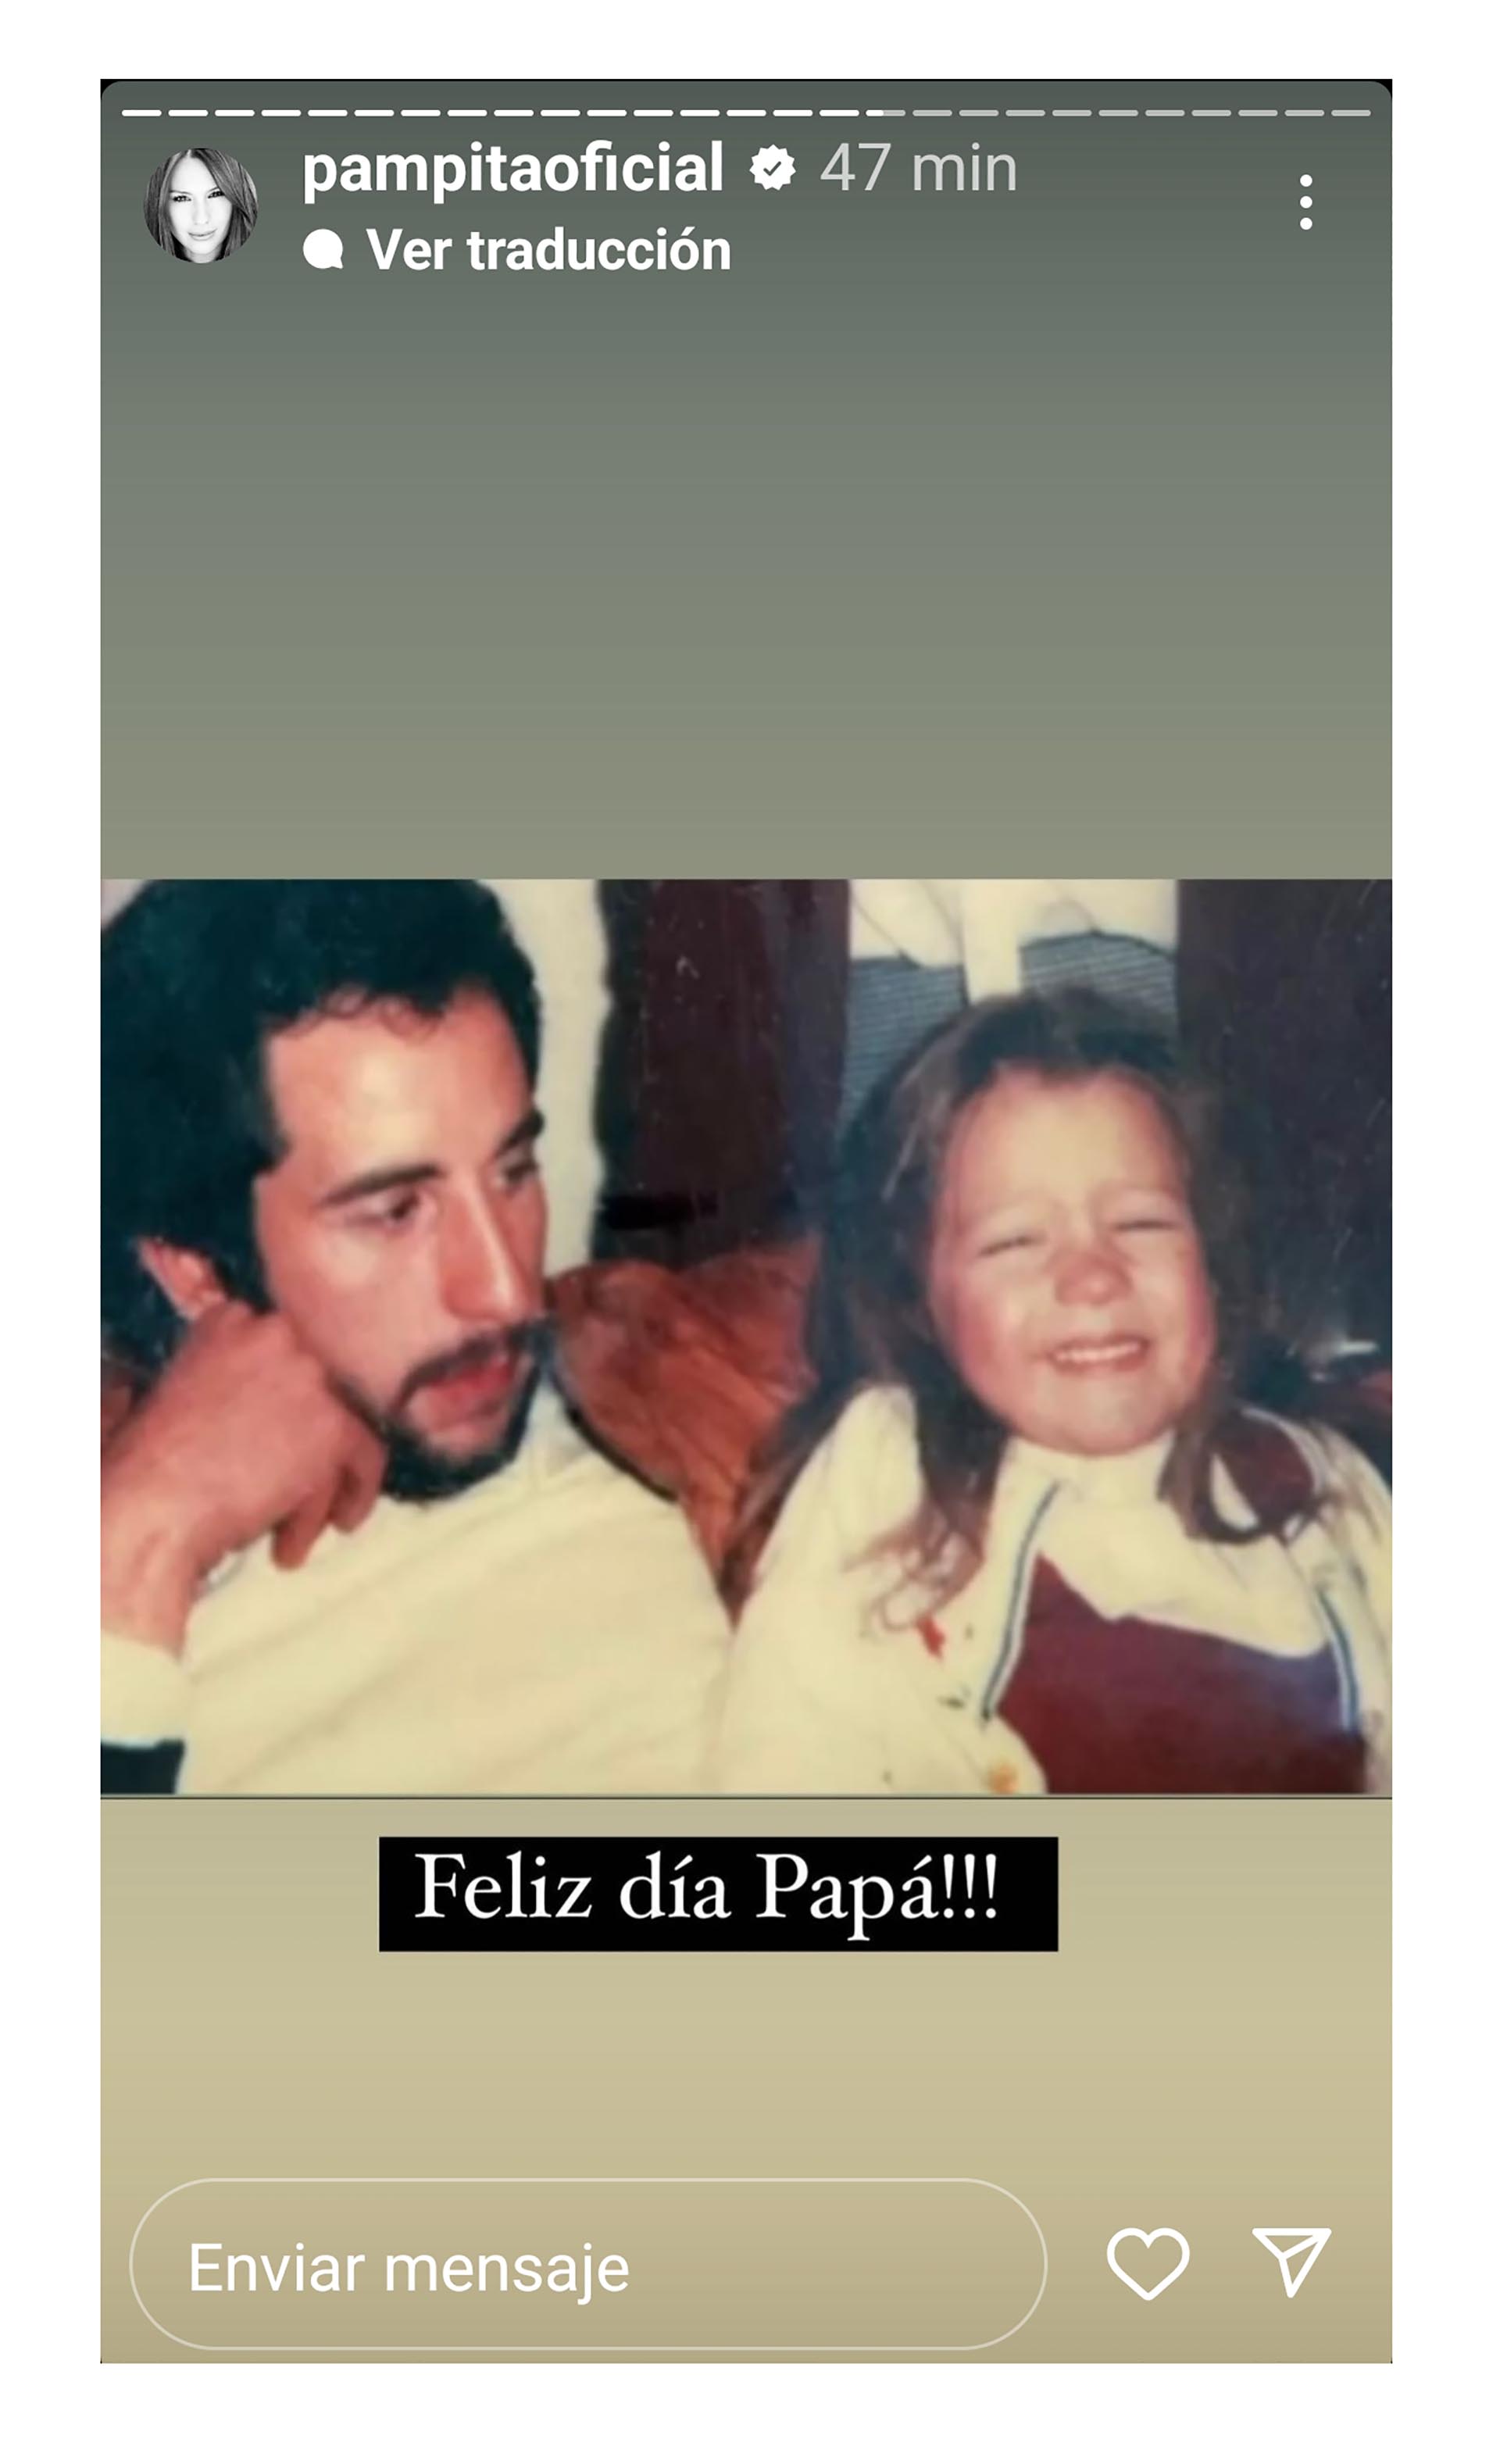 Pampita remembered her dad